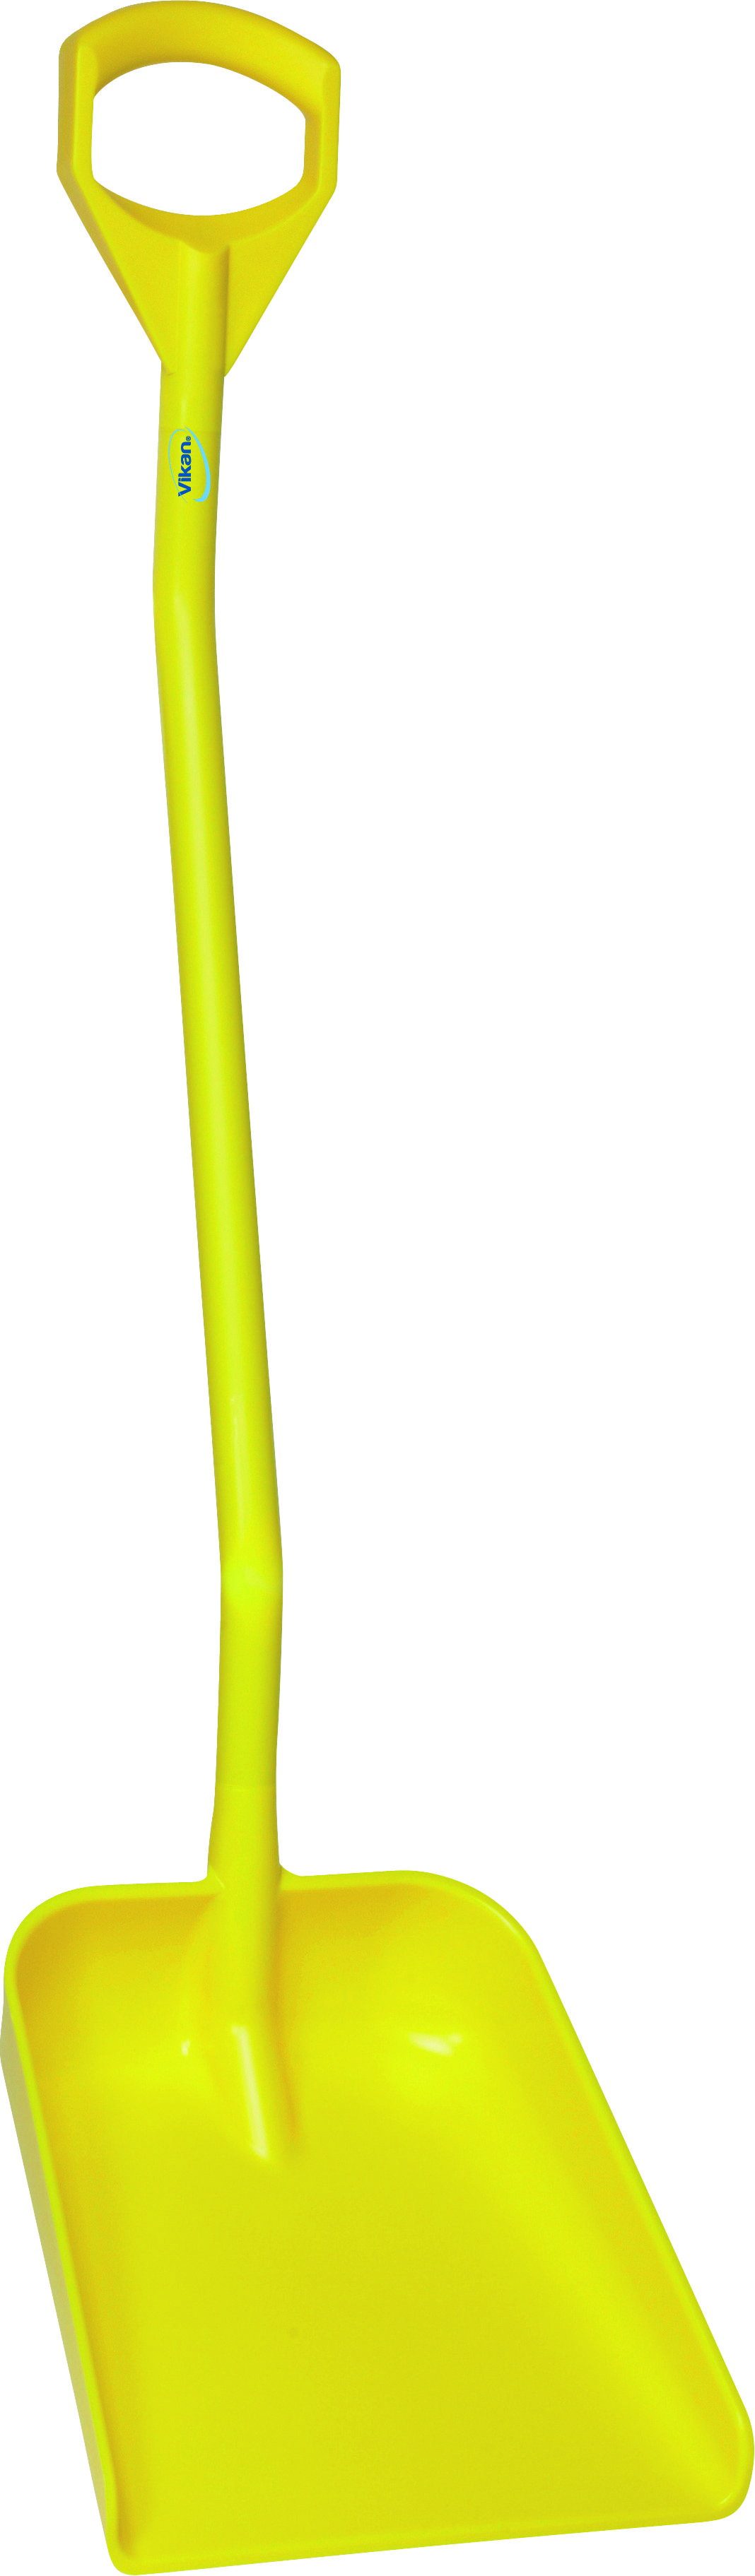 Лопата Vikan эргономичная с длинной рукояткой большая, 1310 мм, желтая